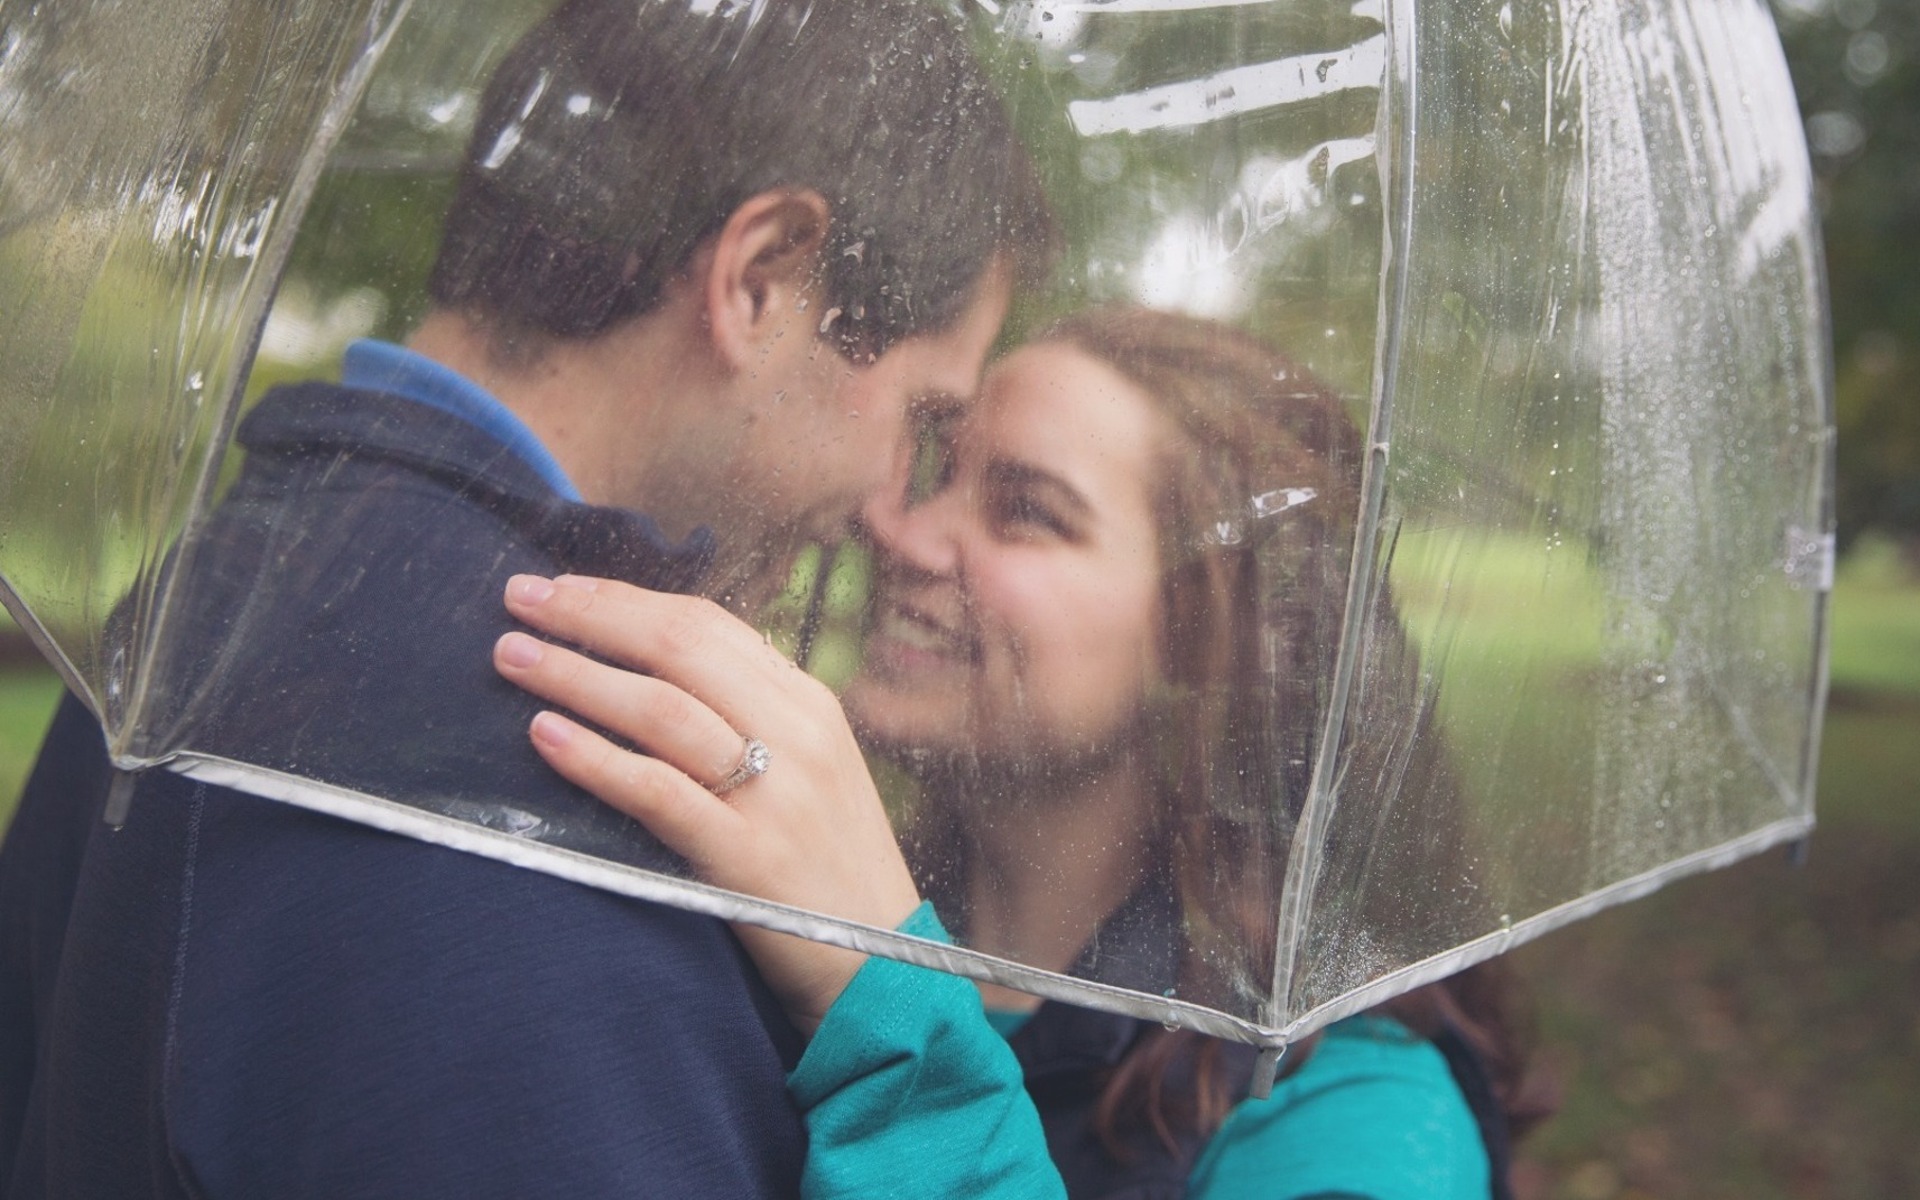 engaged couple embrace under a rainy umbrella